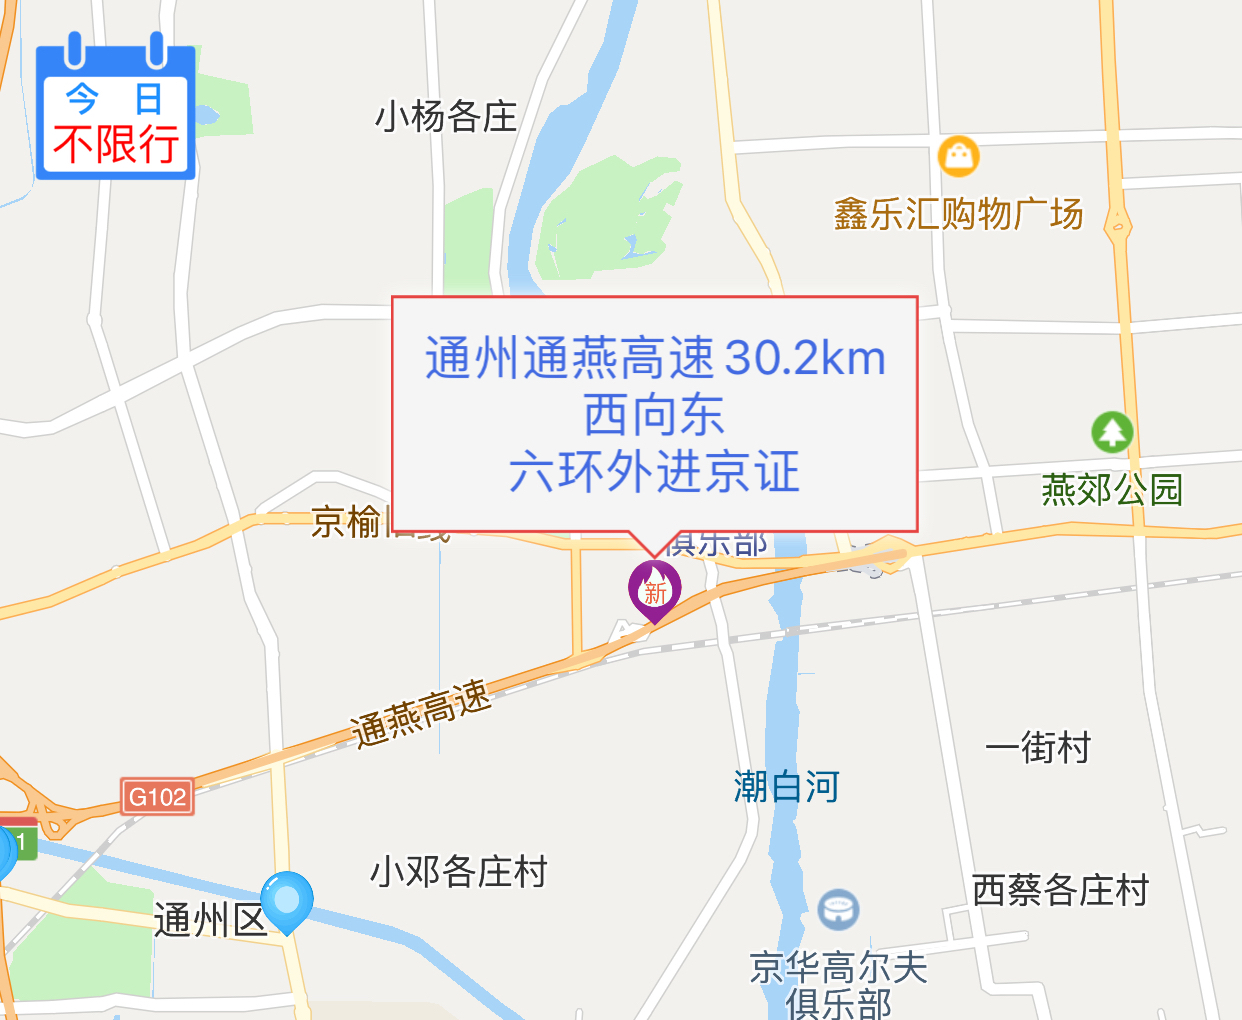 进京证是指在北京市六环路以内,以及六环外个别路段,非北京牌照的外埠